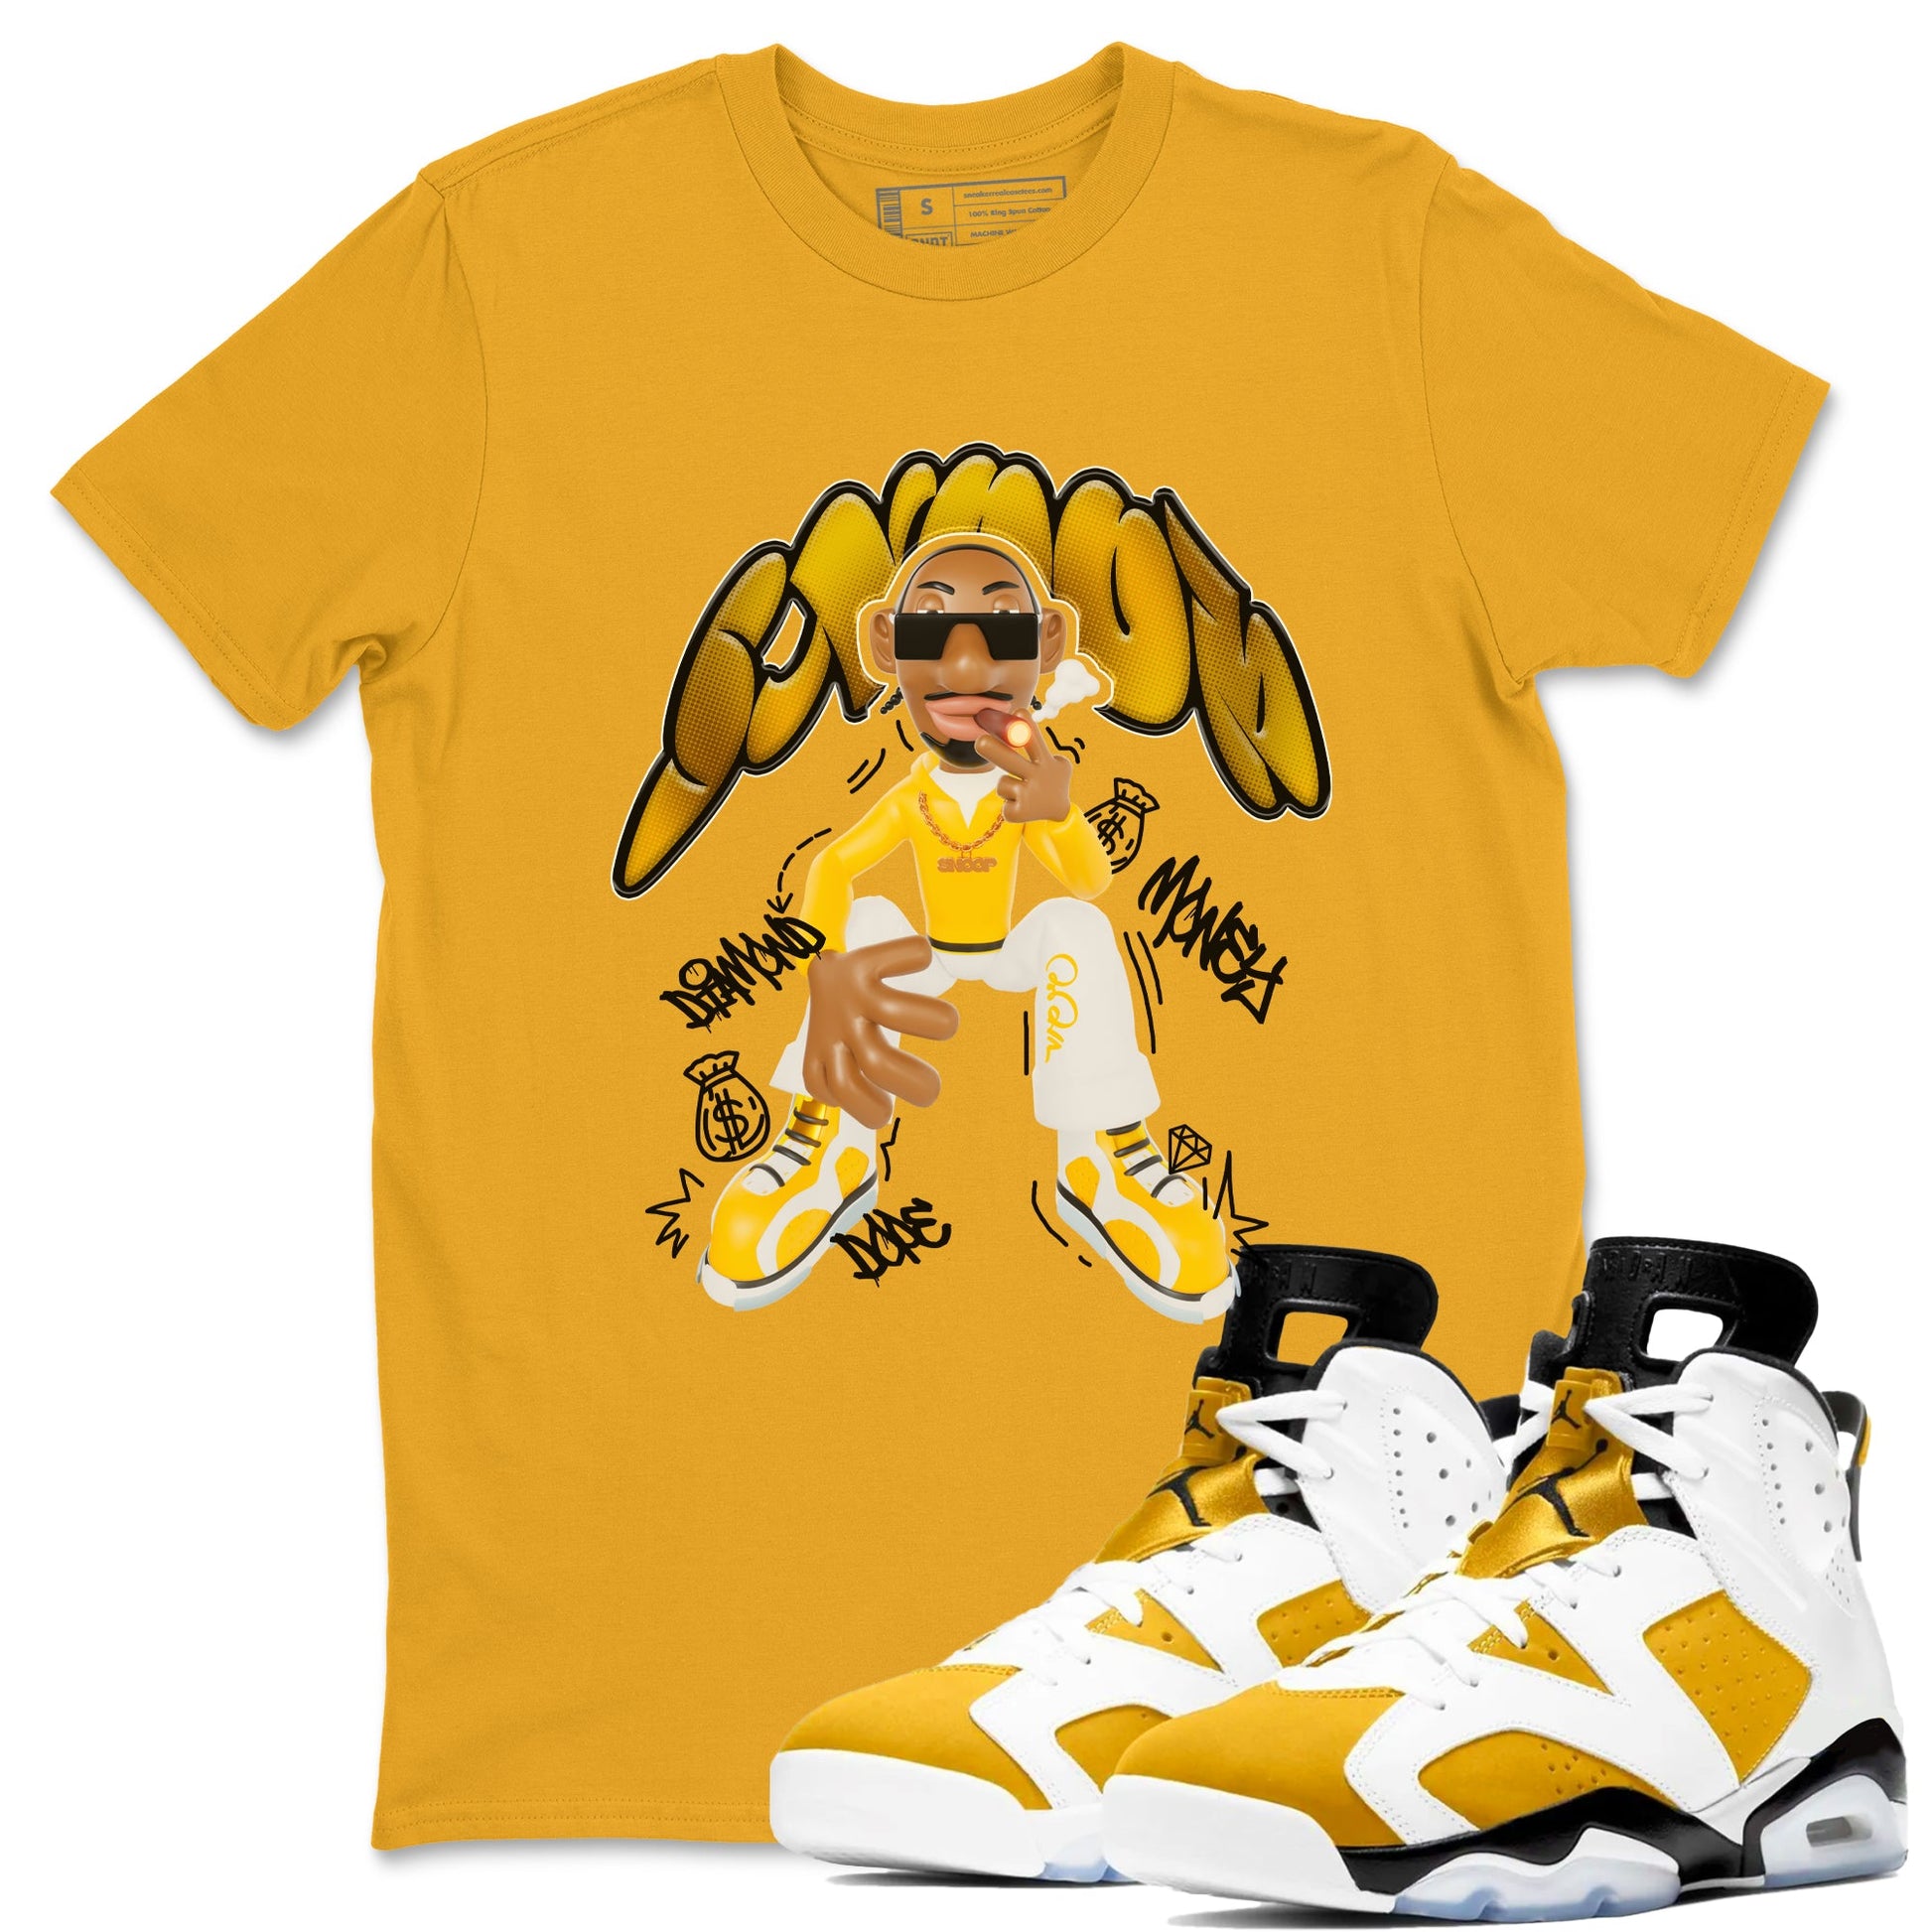 6s Yellow Ochre shirt to match jordans Snoop sneaker tees Air Jordan 6 Yellow Ochre SNRT Sneaker Release Tees Unisex Gold 1 T-Shirt